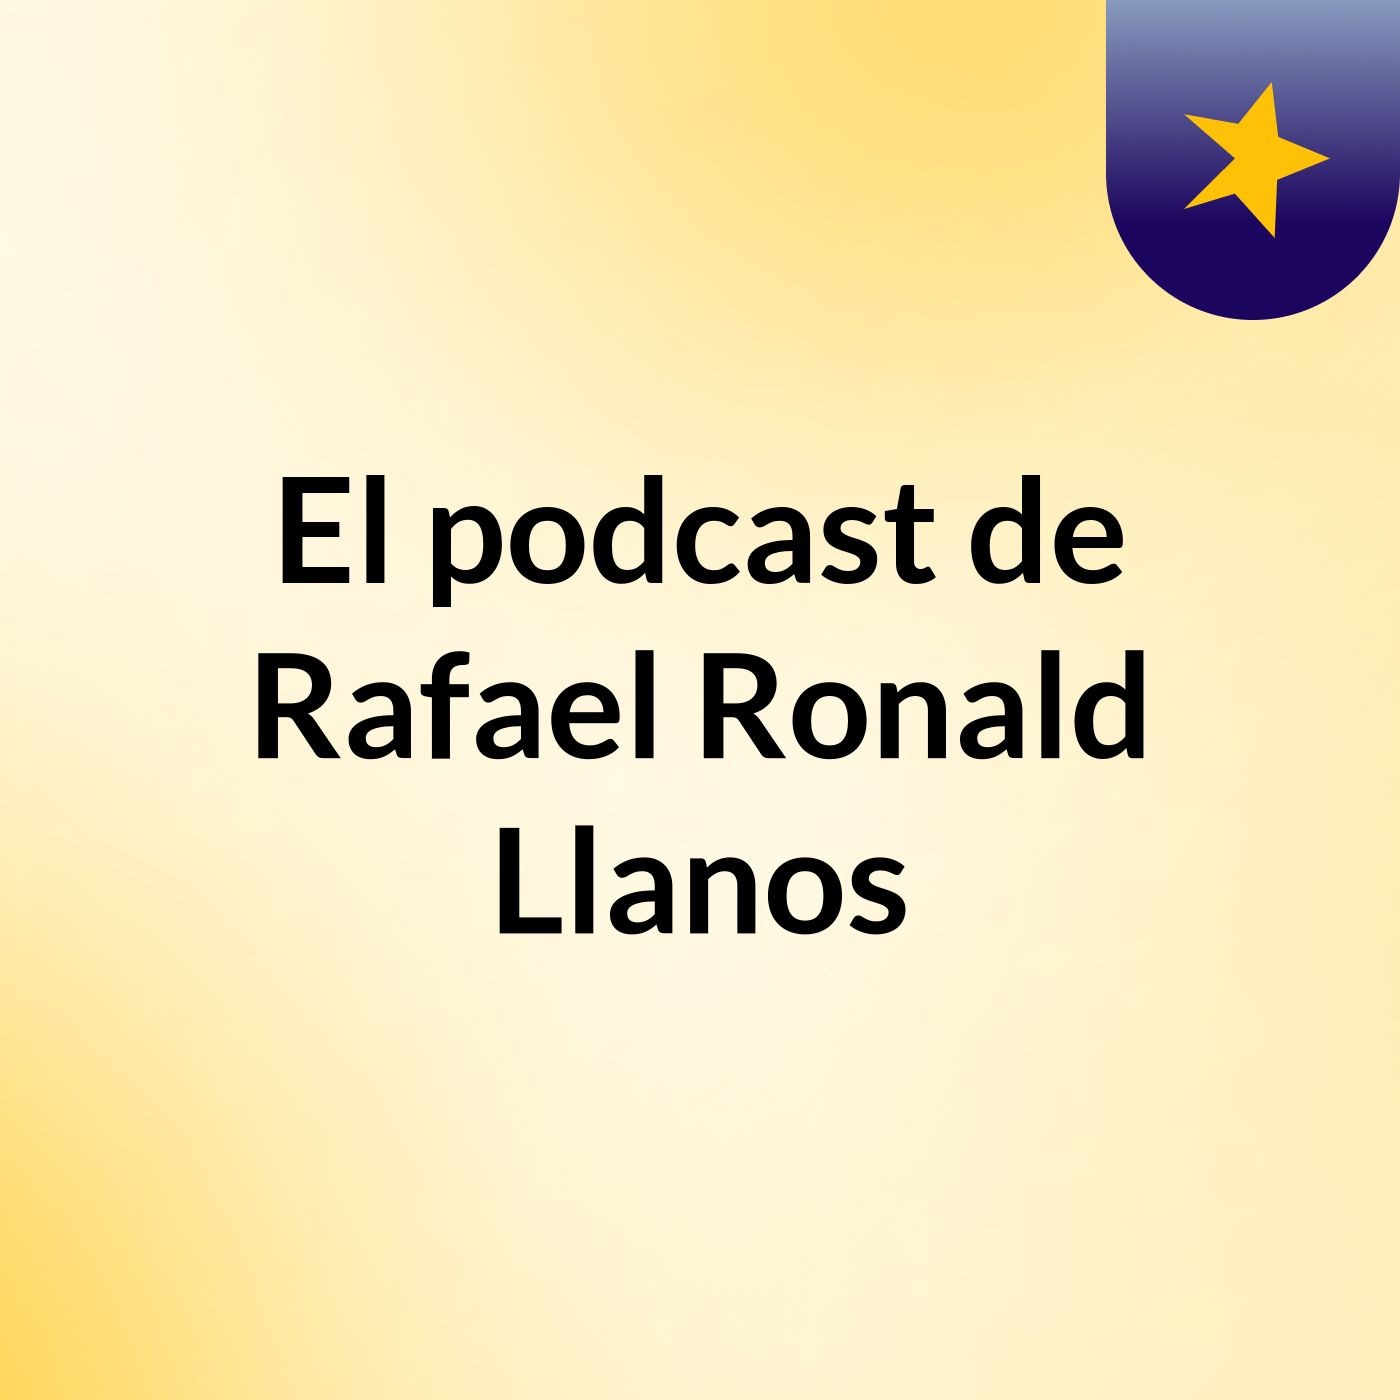 El podcast de Rafael Ronald Llanos